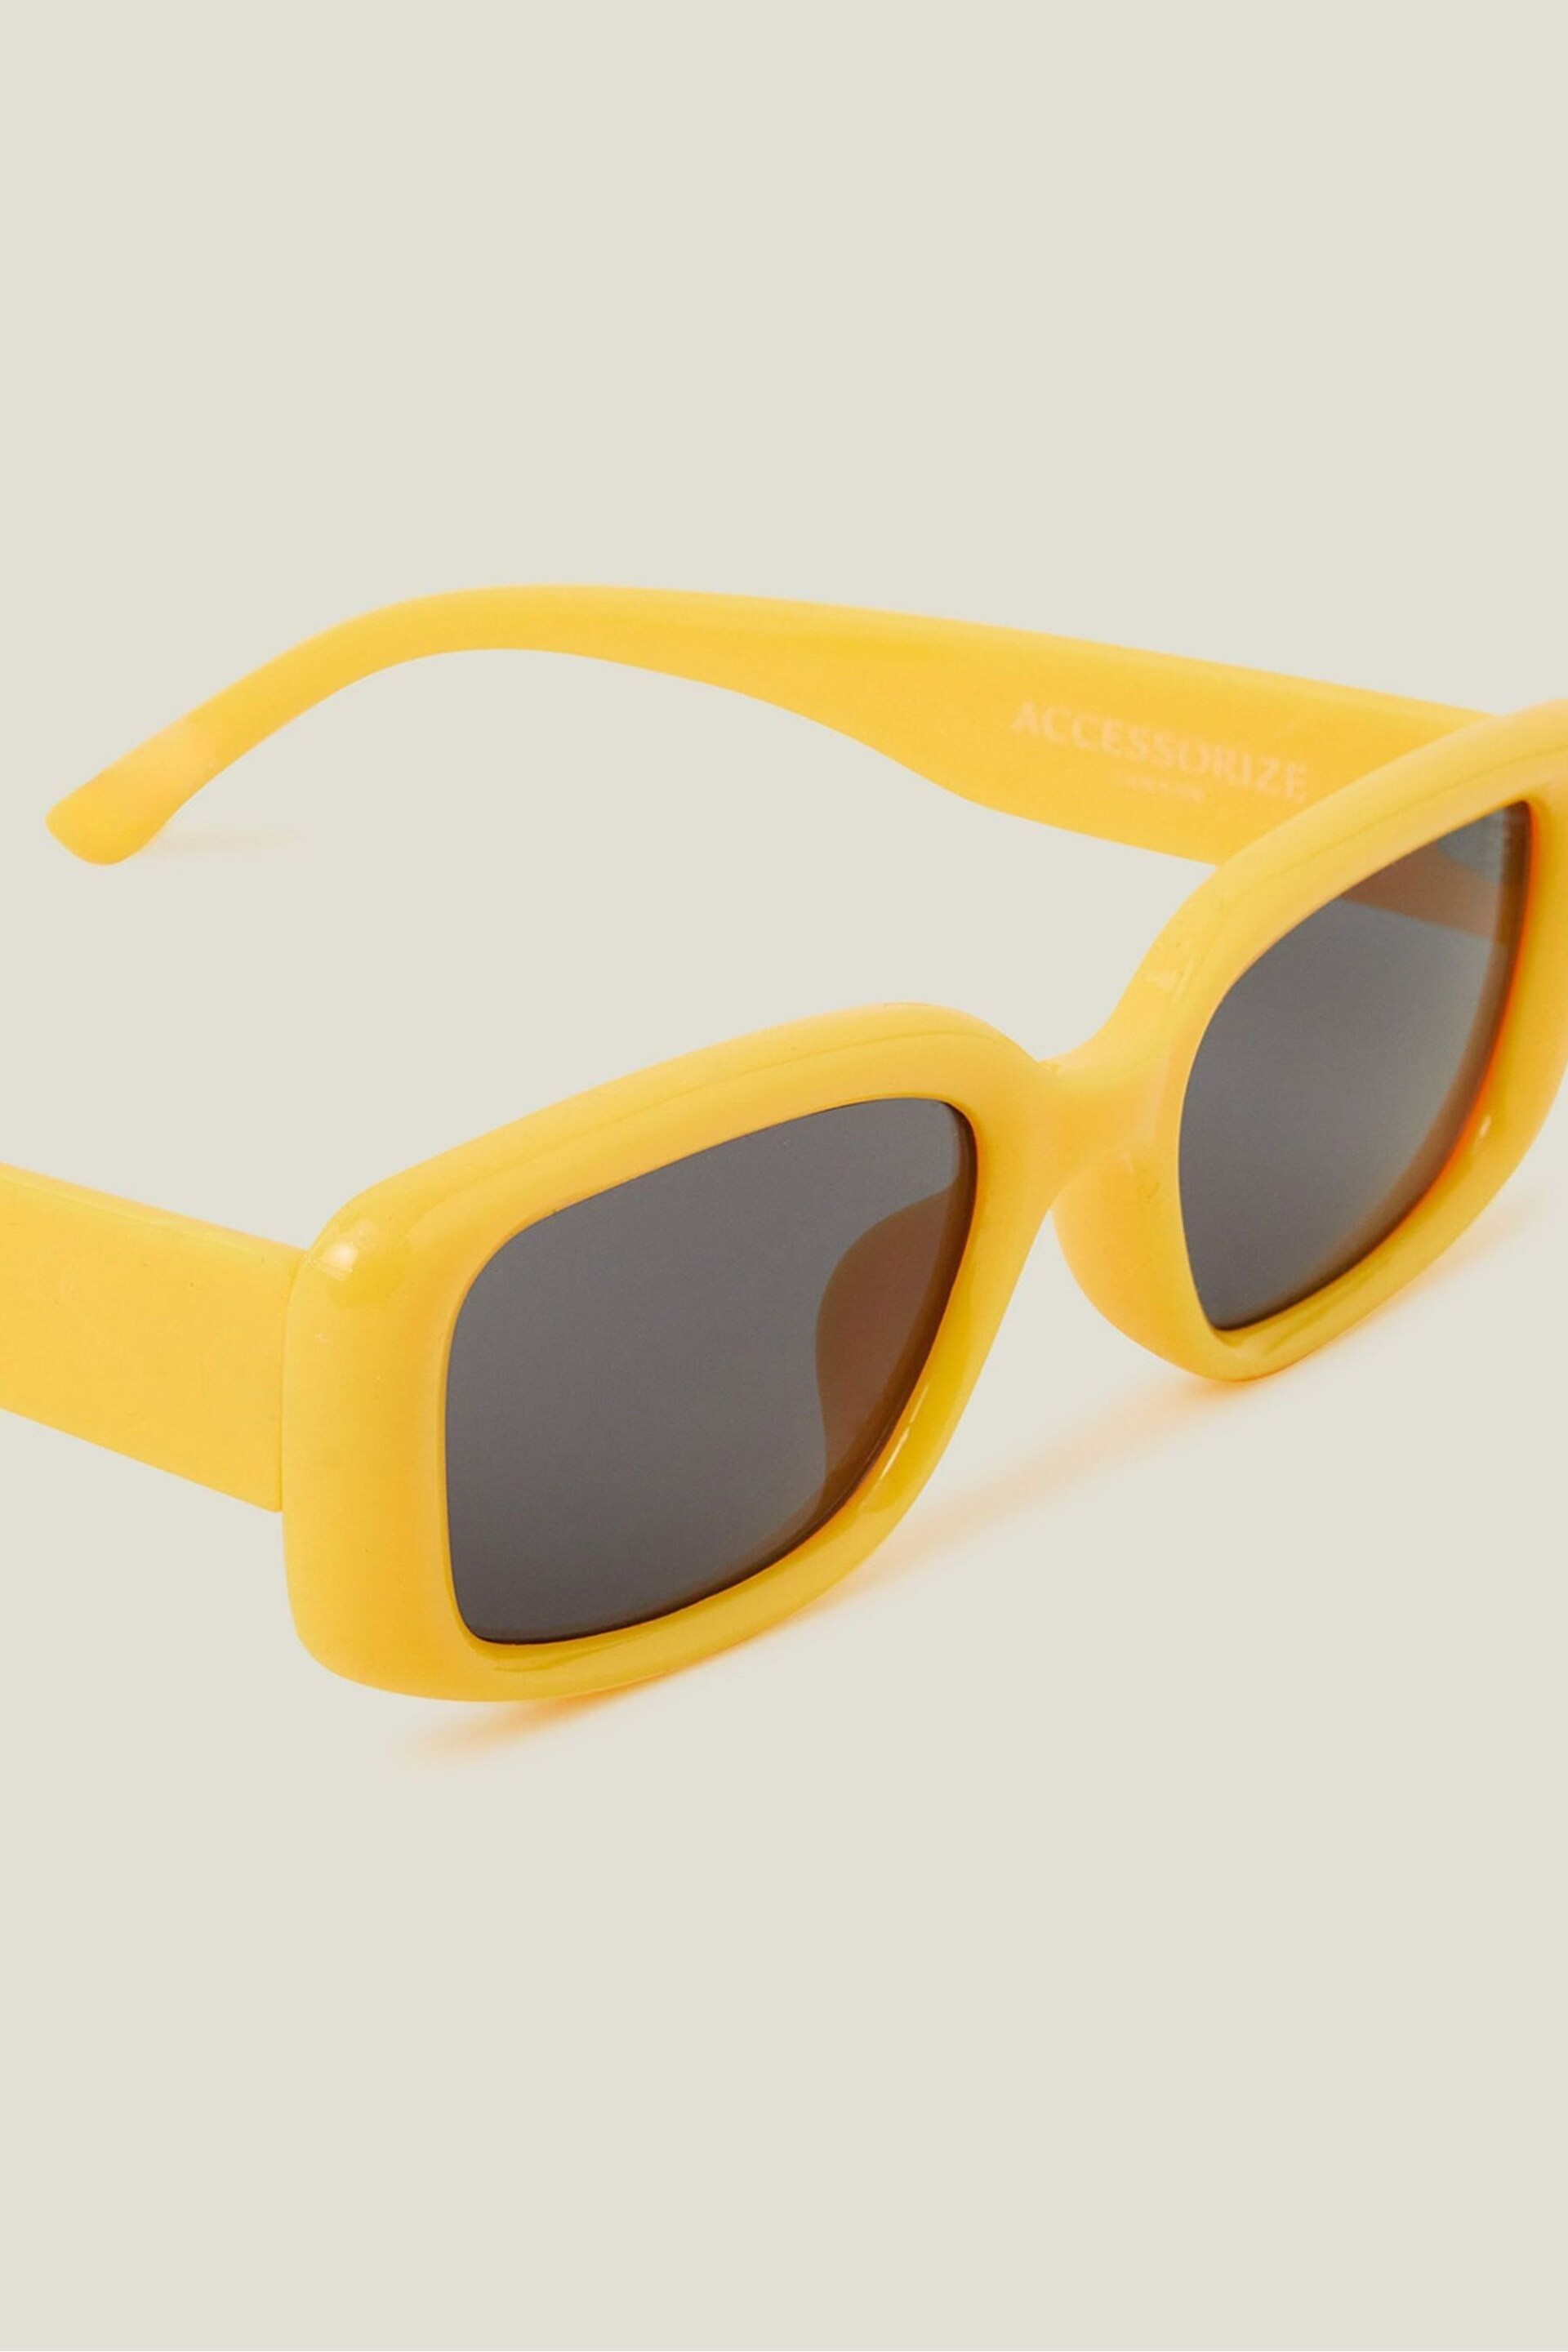 Accessorize Yellow Bubble Sunglasses - Image 2 of 3